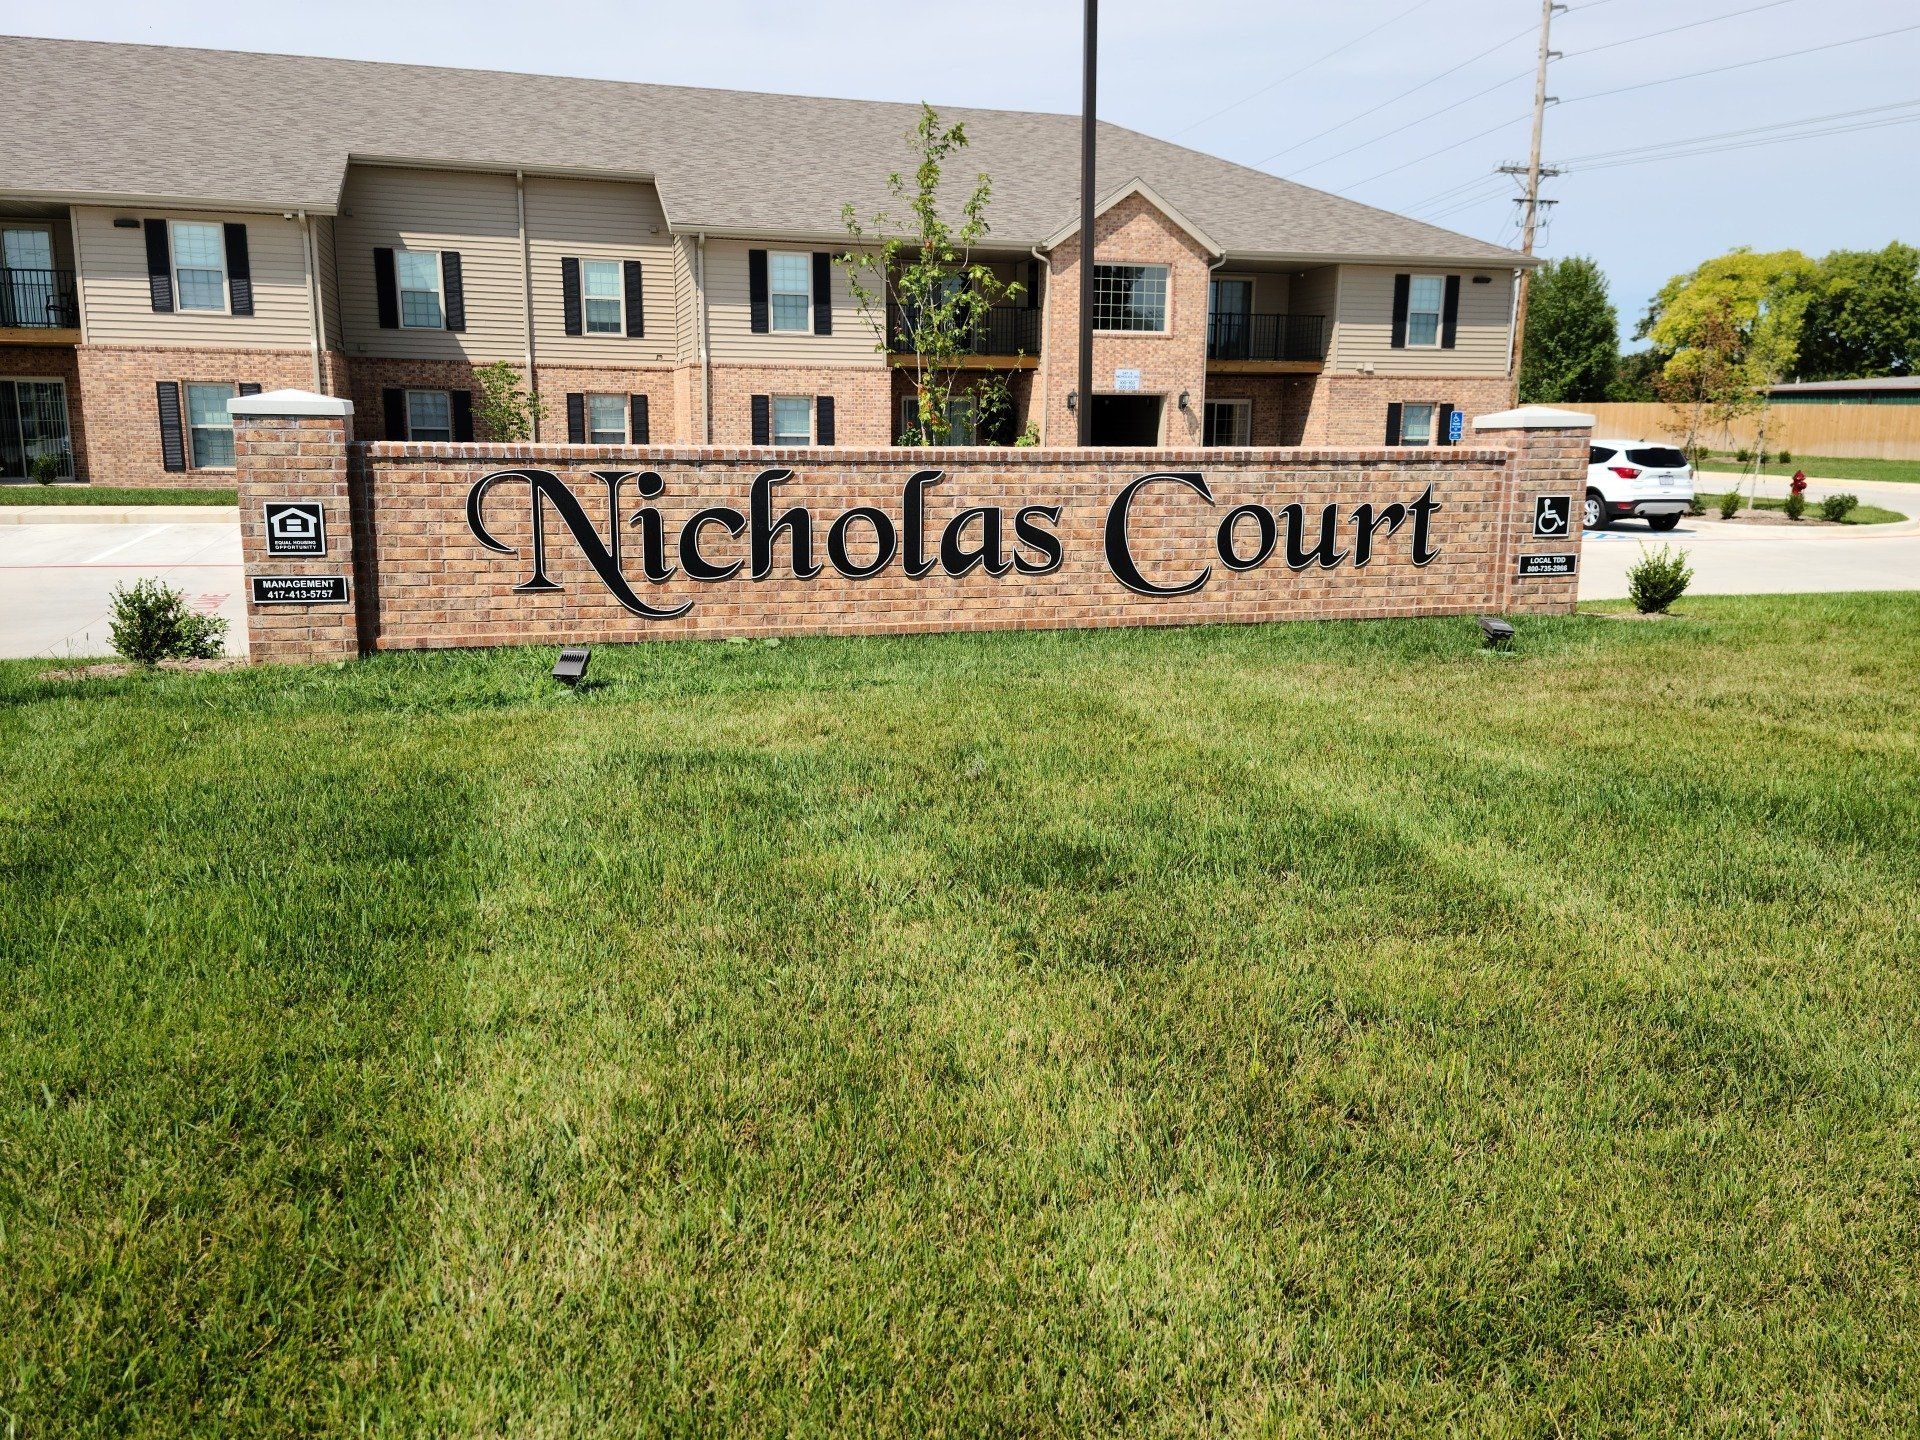 NICHOLAS COURT APARTMENTS